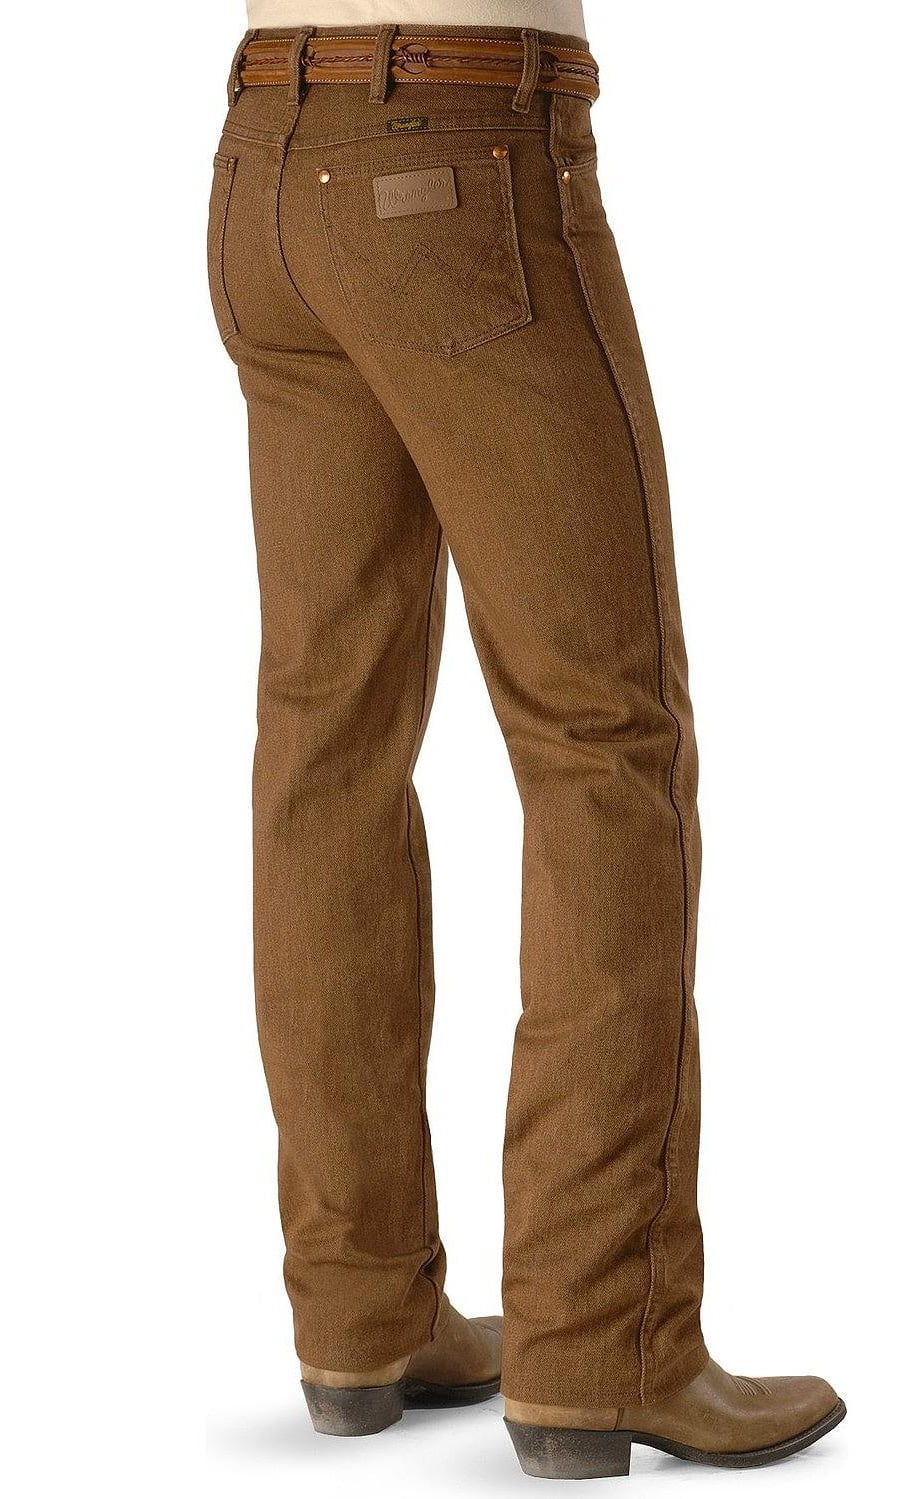 Wrangler Men's Jeans 936 Slim Fit Prewashed Colors - Mesquite_X -  